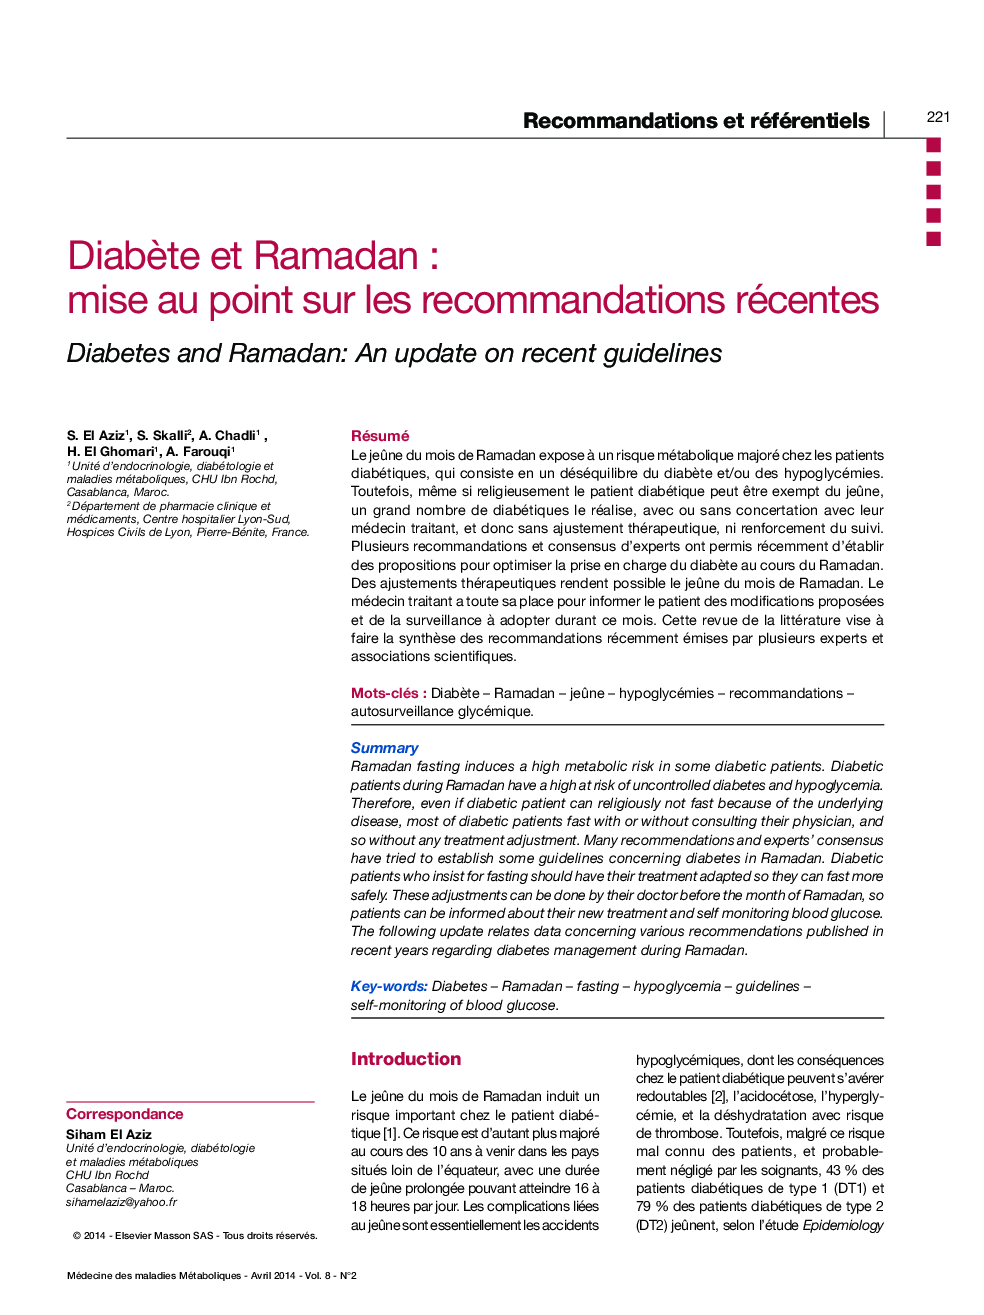 DiabÃ¨te et Ramadan: Mise au point sur les recommandations récentes